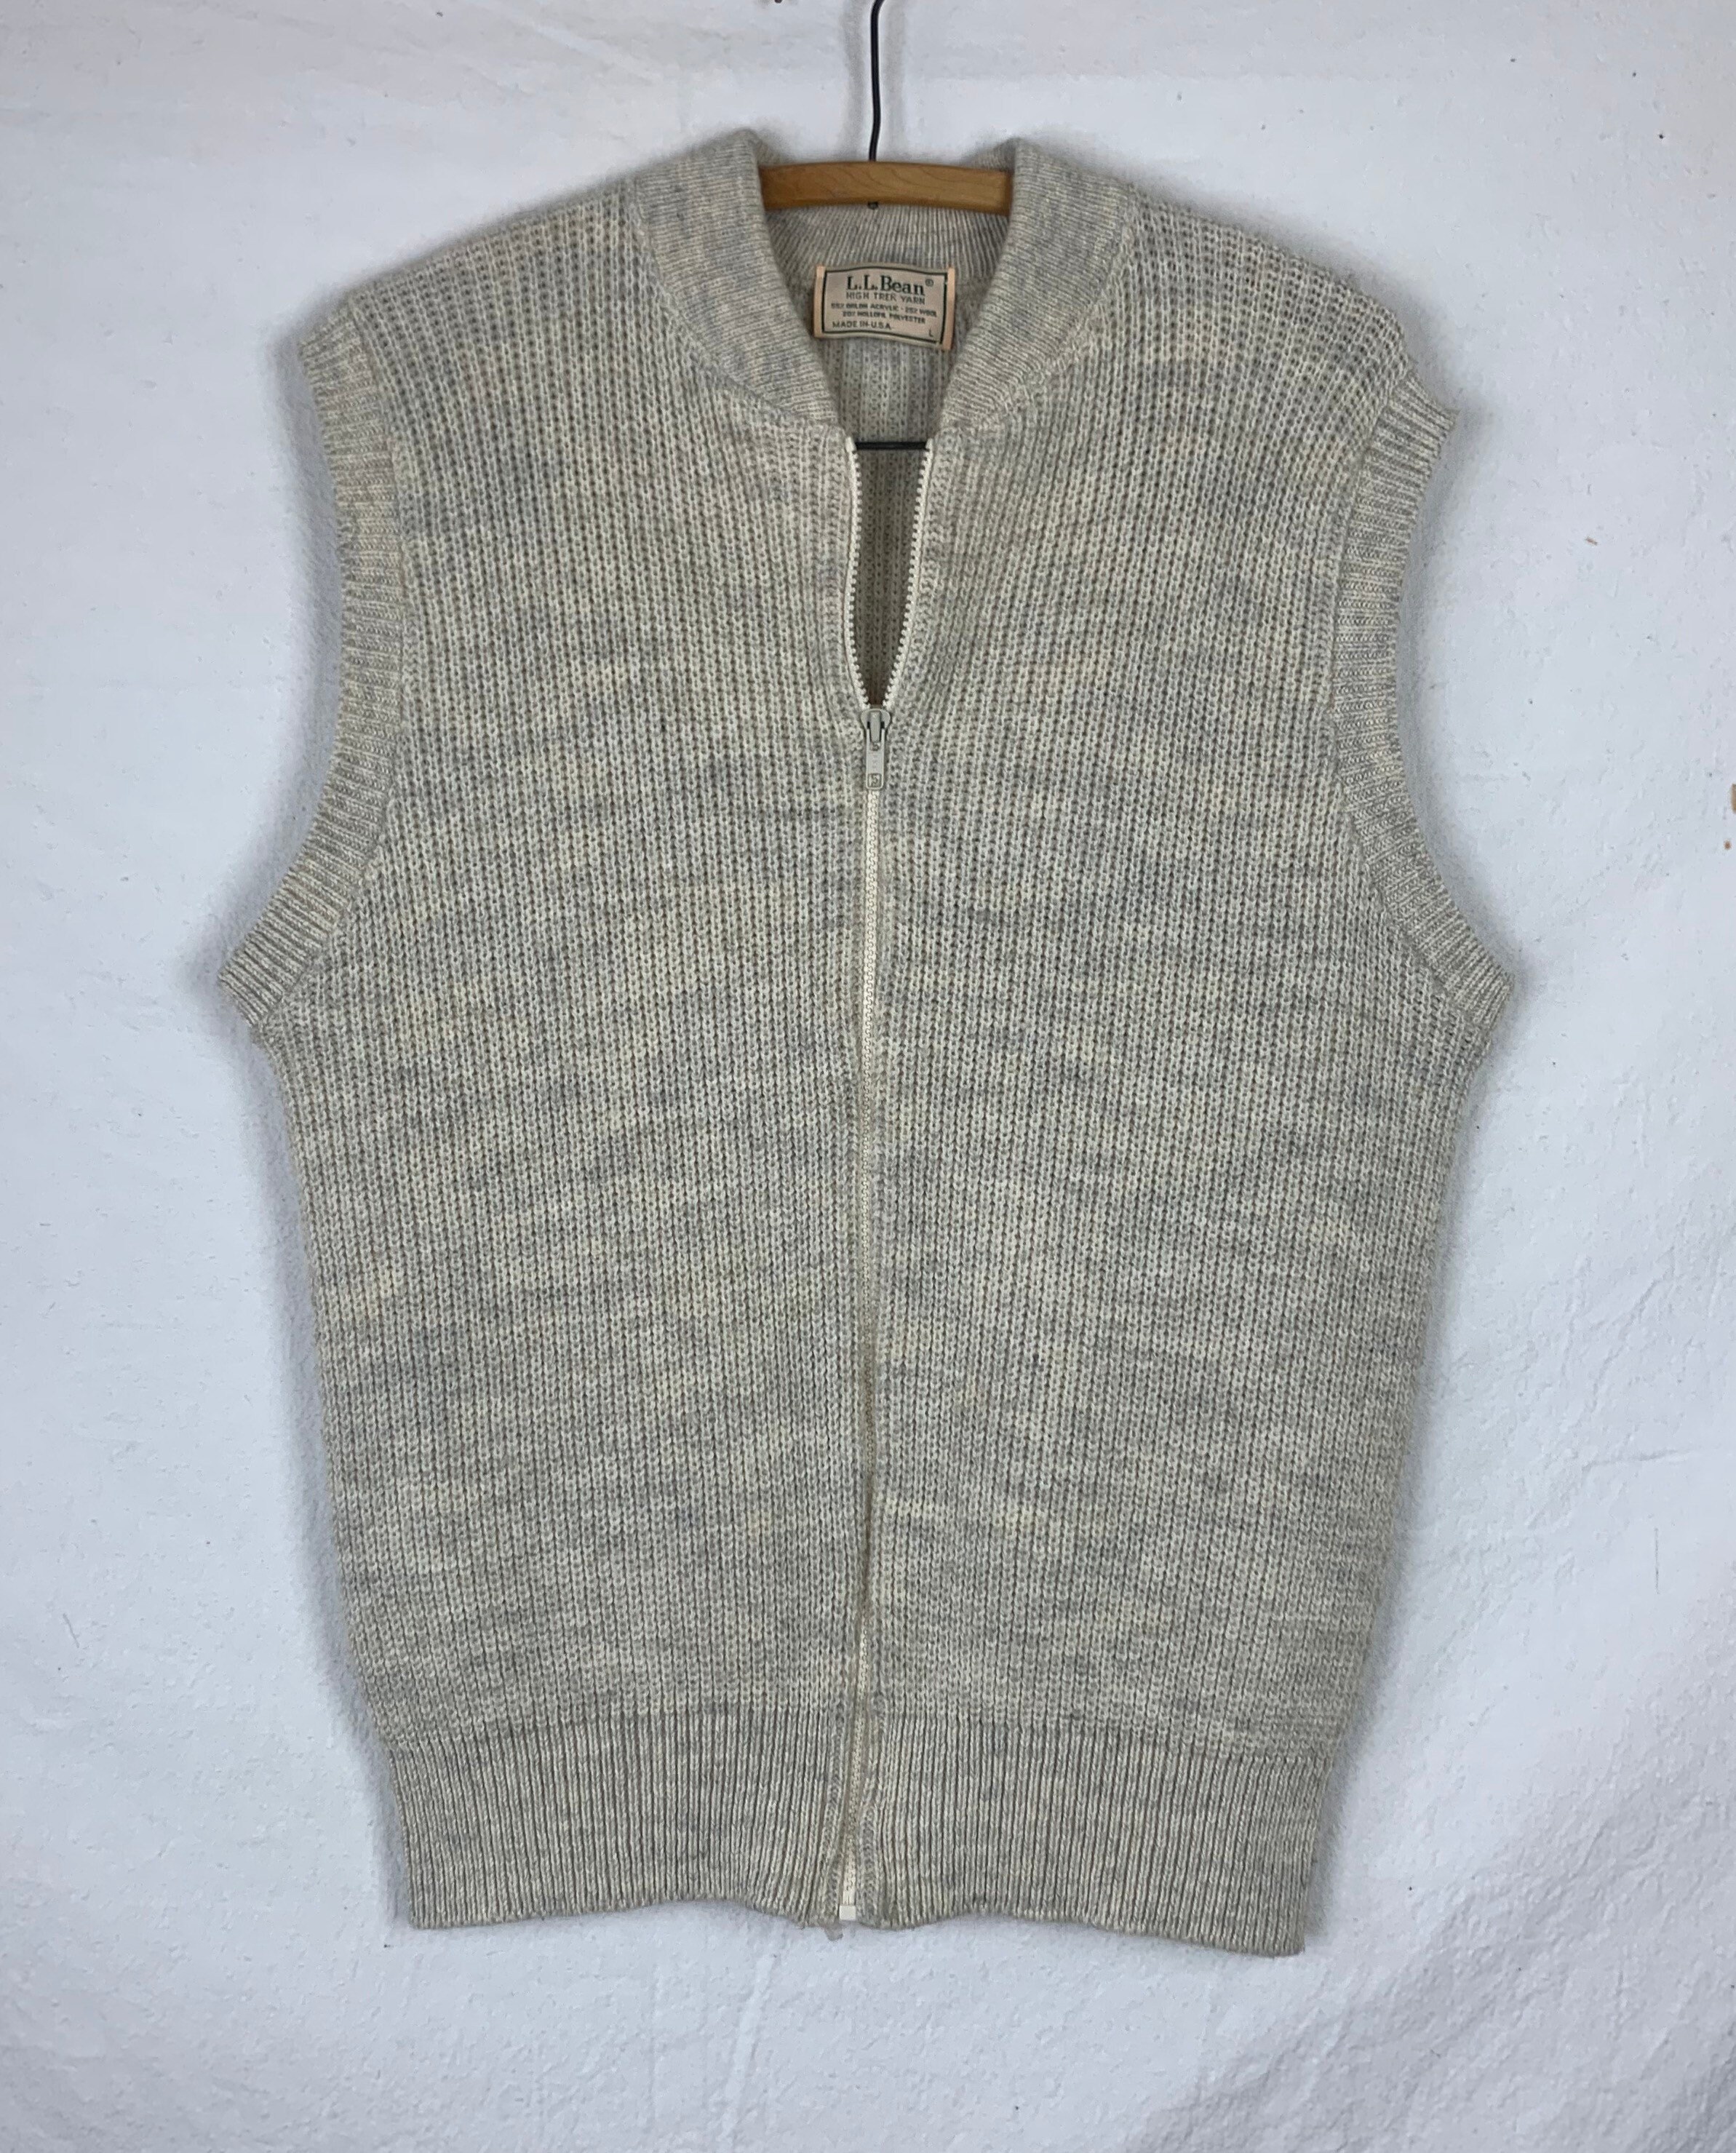 L.L. Bean Knit Zip Up Sweater Vest | Etsy